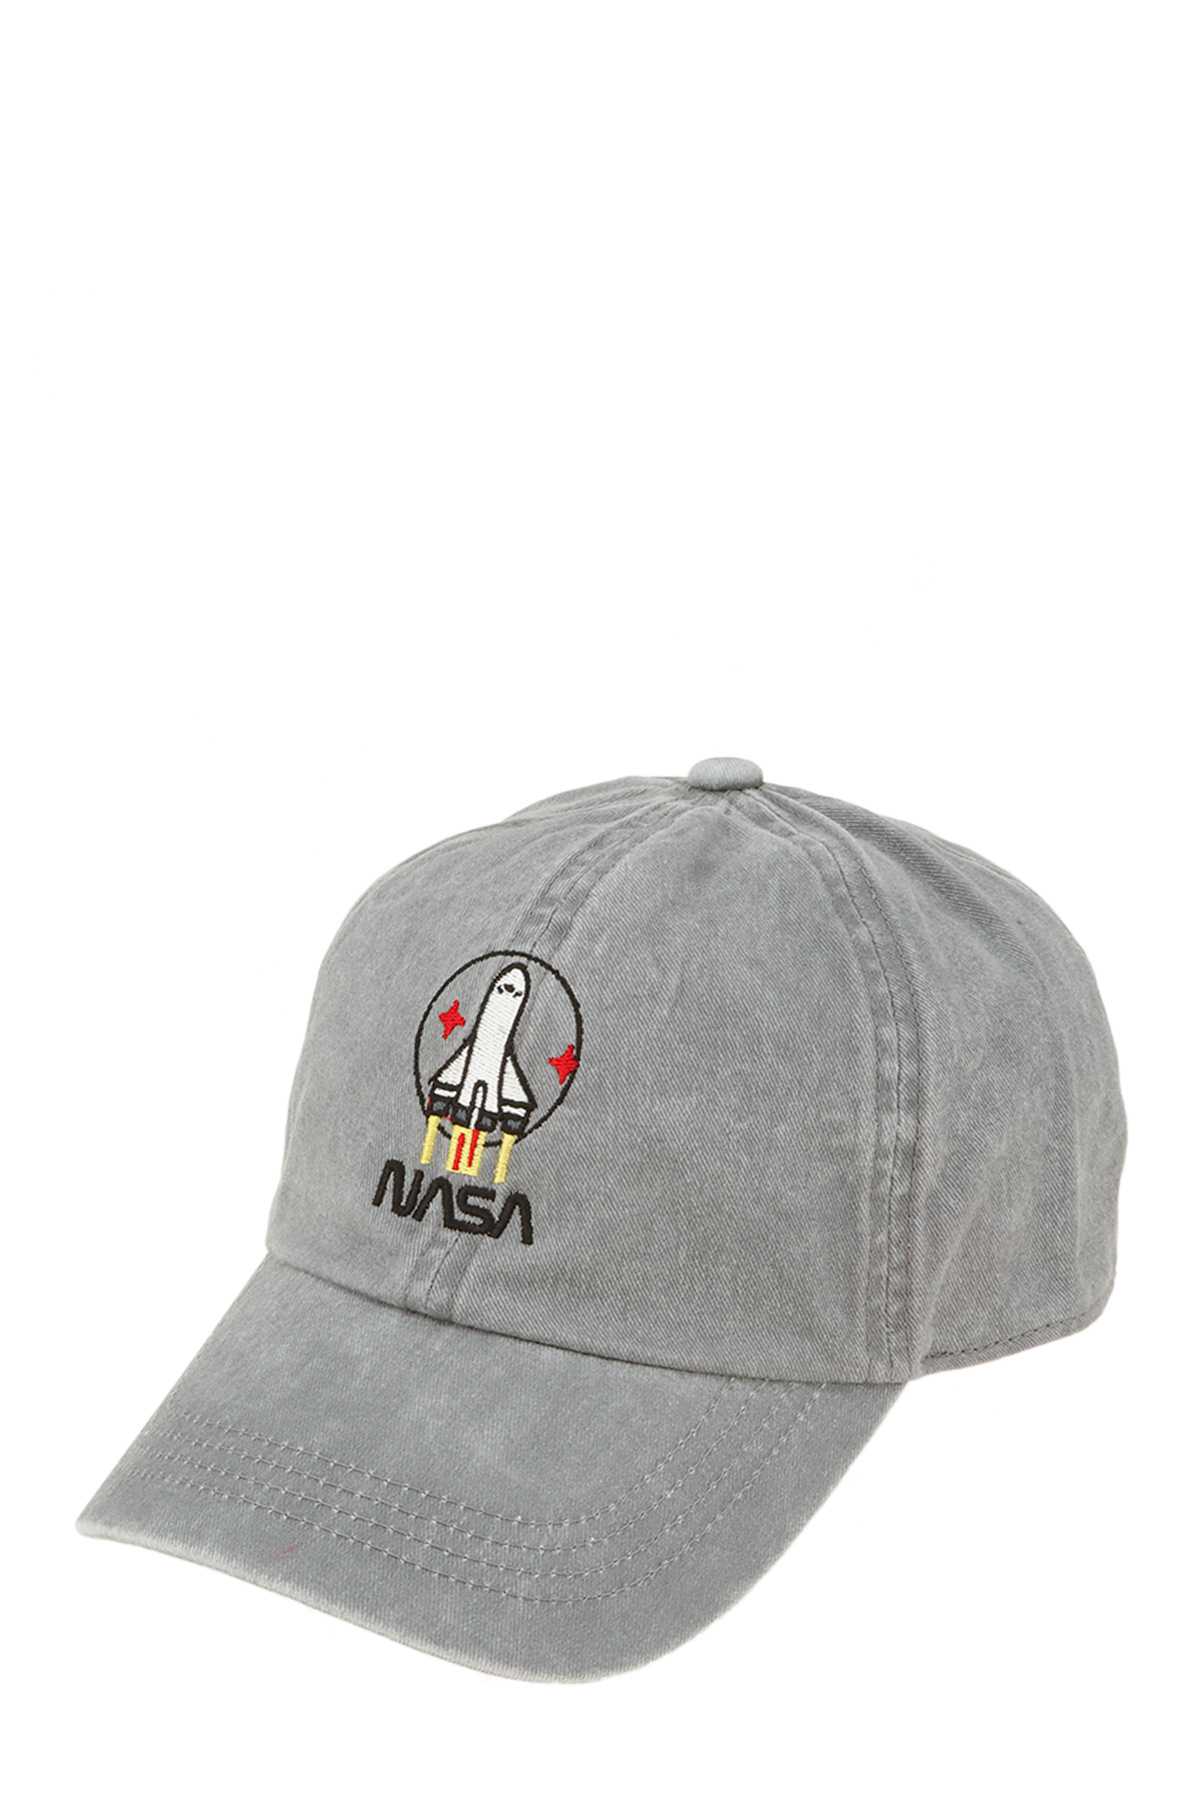 Nasa Rocket Embroidered Cap